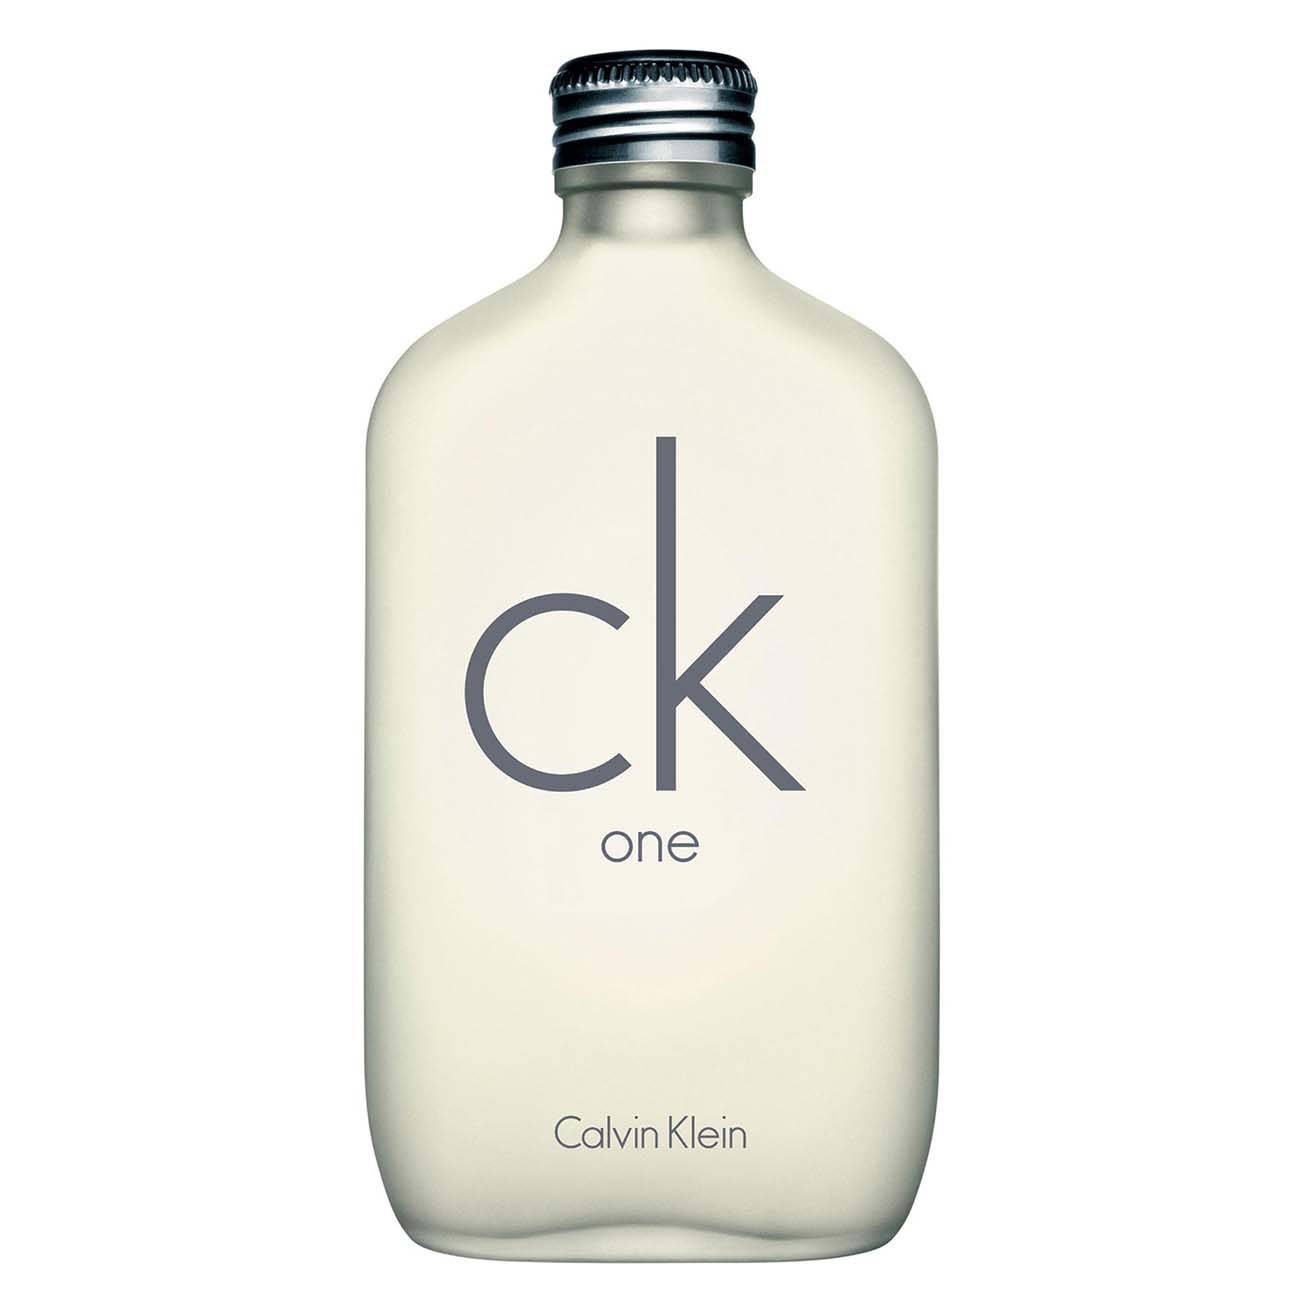 Ck One 200ml - Calvin Klein